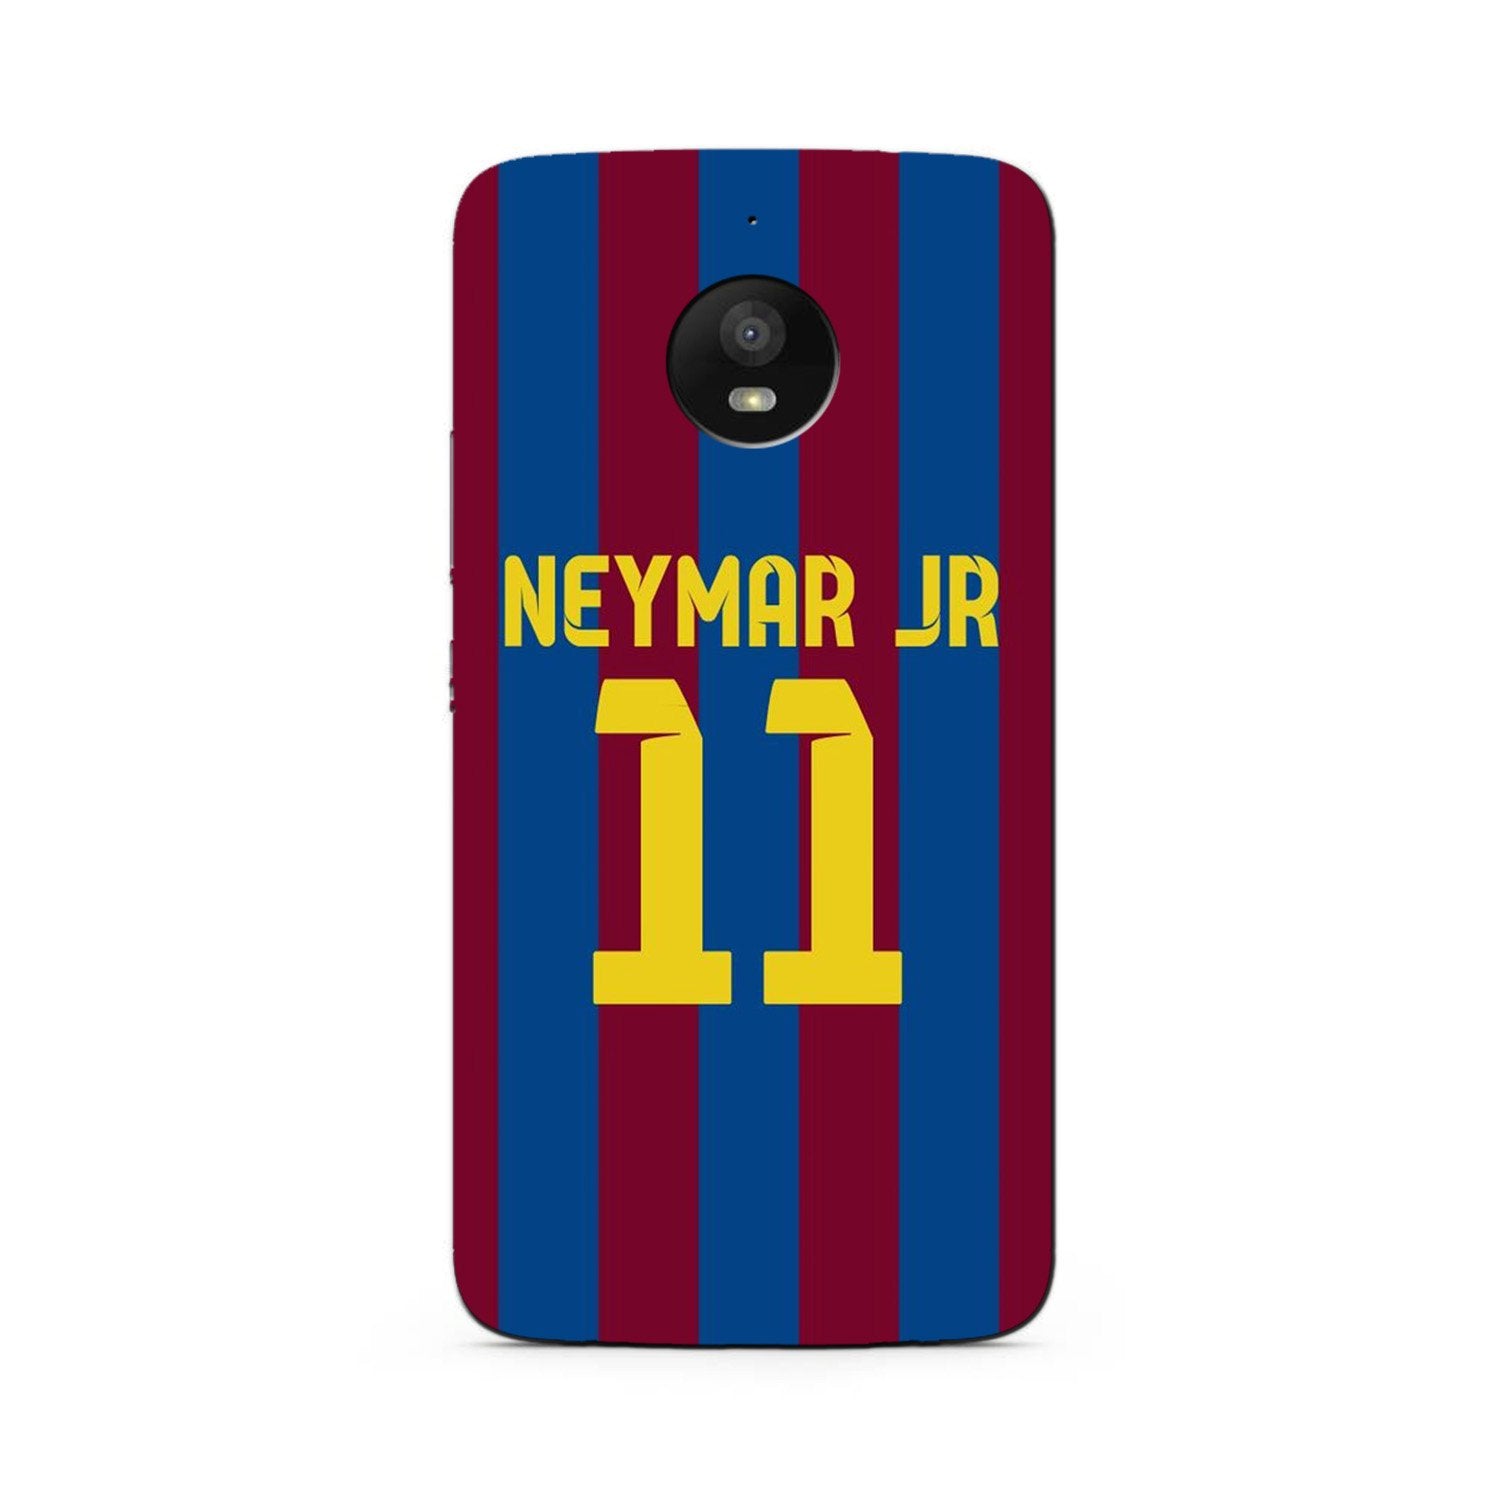 Neymar Jr Case for Moto E4 Plus  (Design - 162)